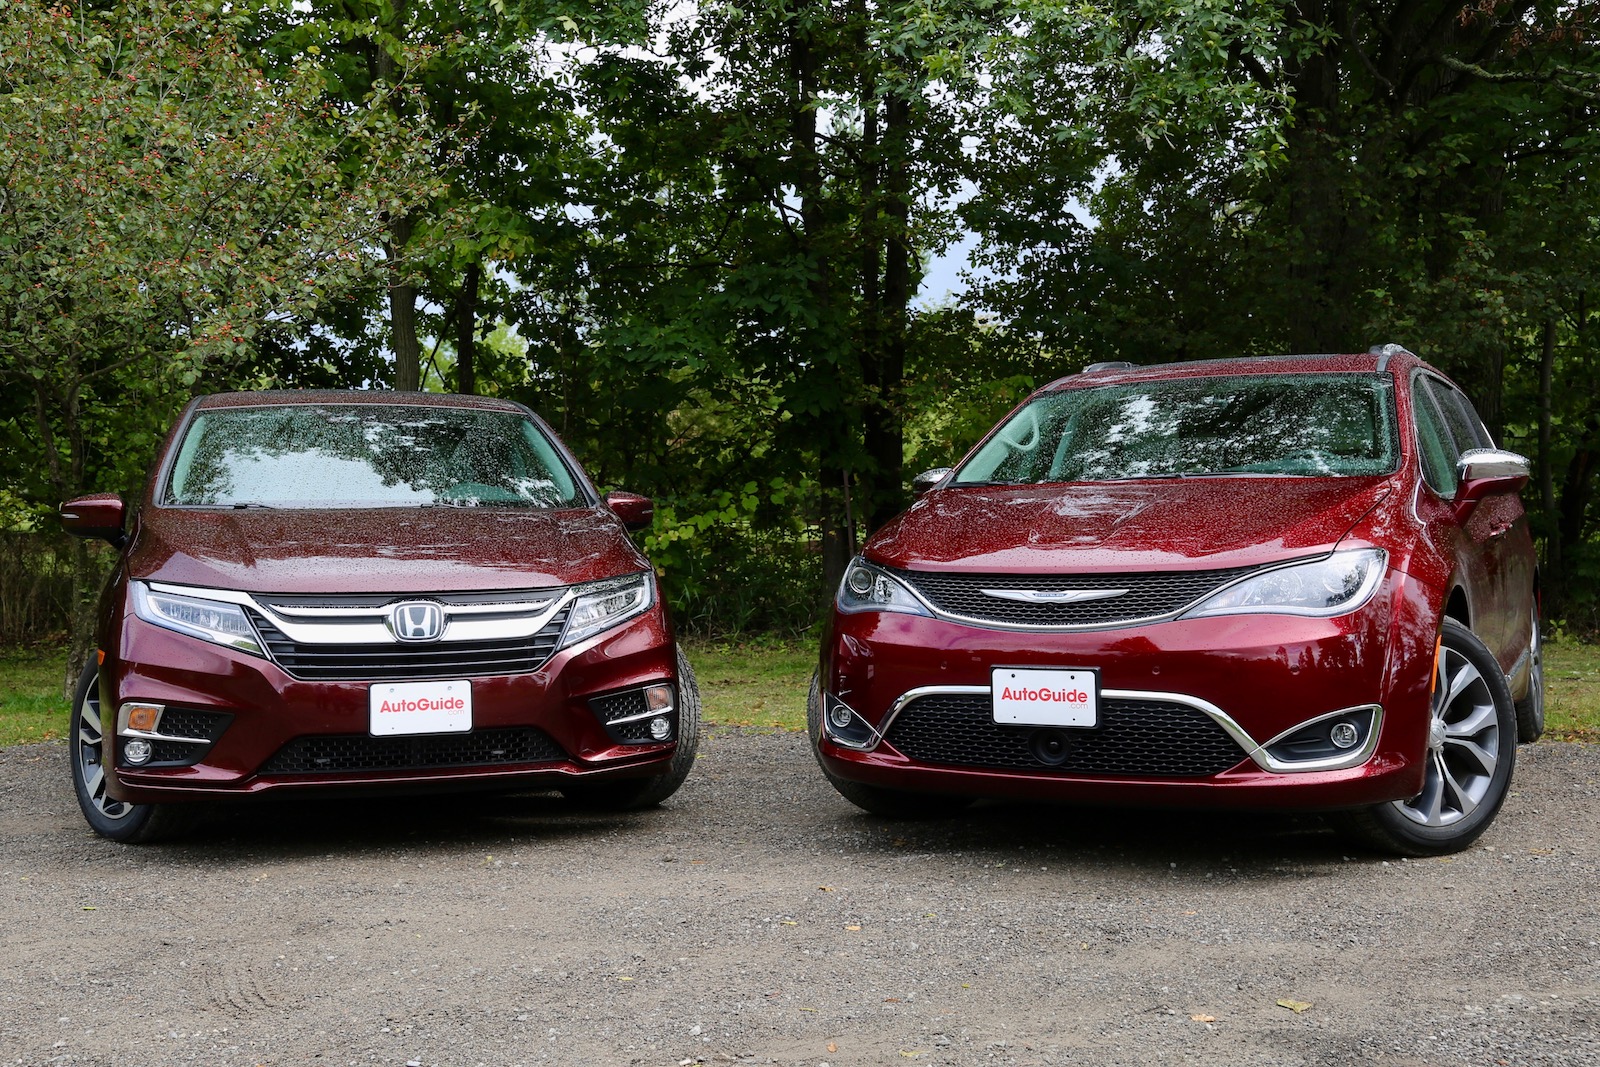 2018 Honda Odyssey vs 2017 Chrysler Pacifica Comparison Test - AutoGuide.com